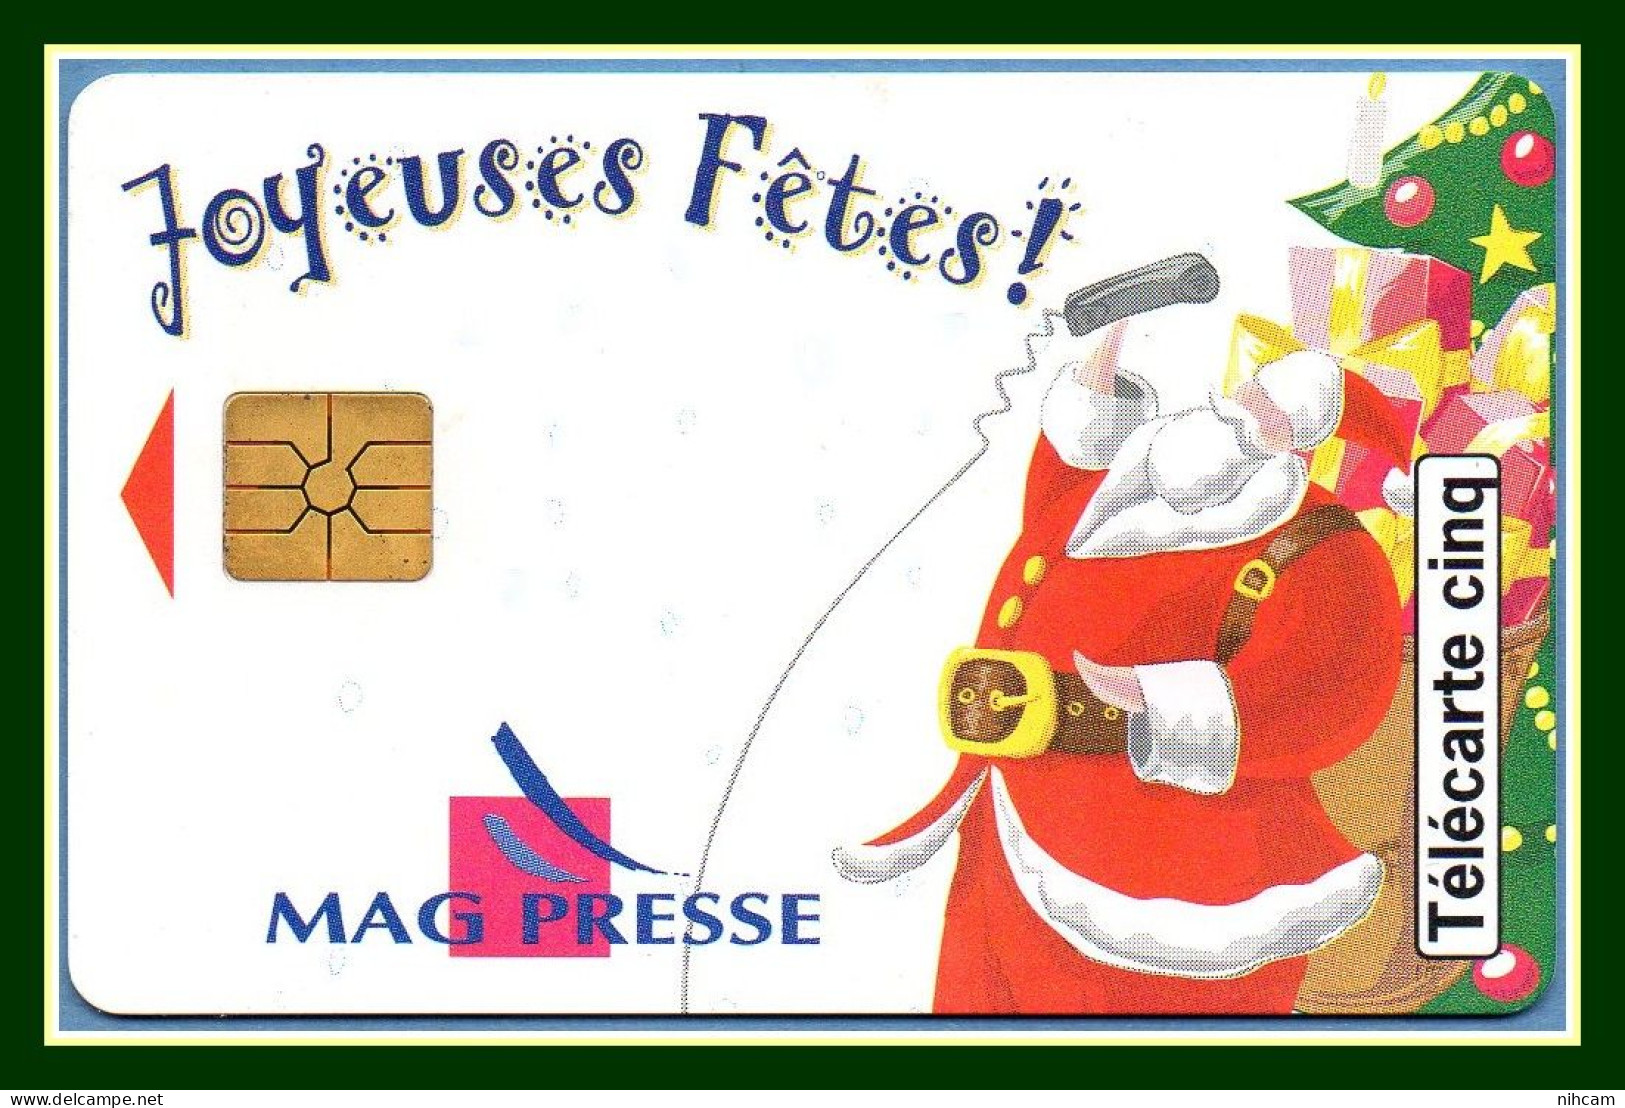 Télécarte France 5 U Neuve Mag Presse Joyeuses Fêtes Père Noël 10/96 17000 Ex (R) Mint - 5 Units